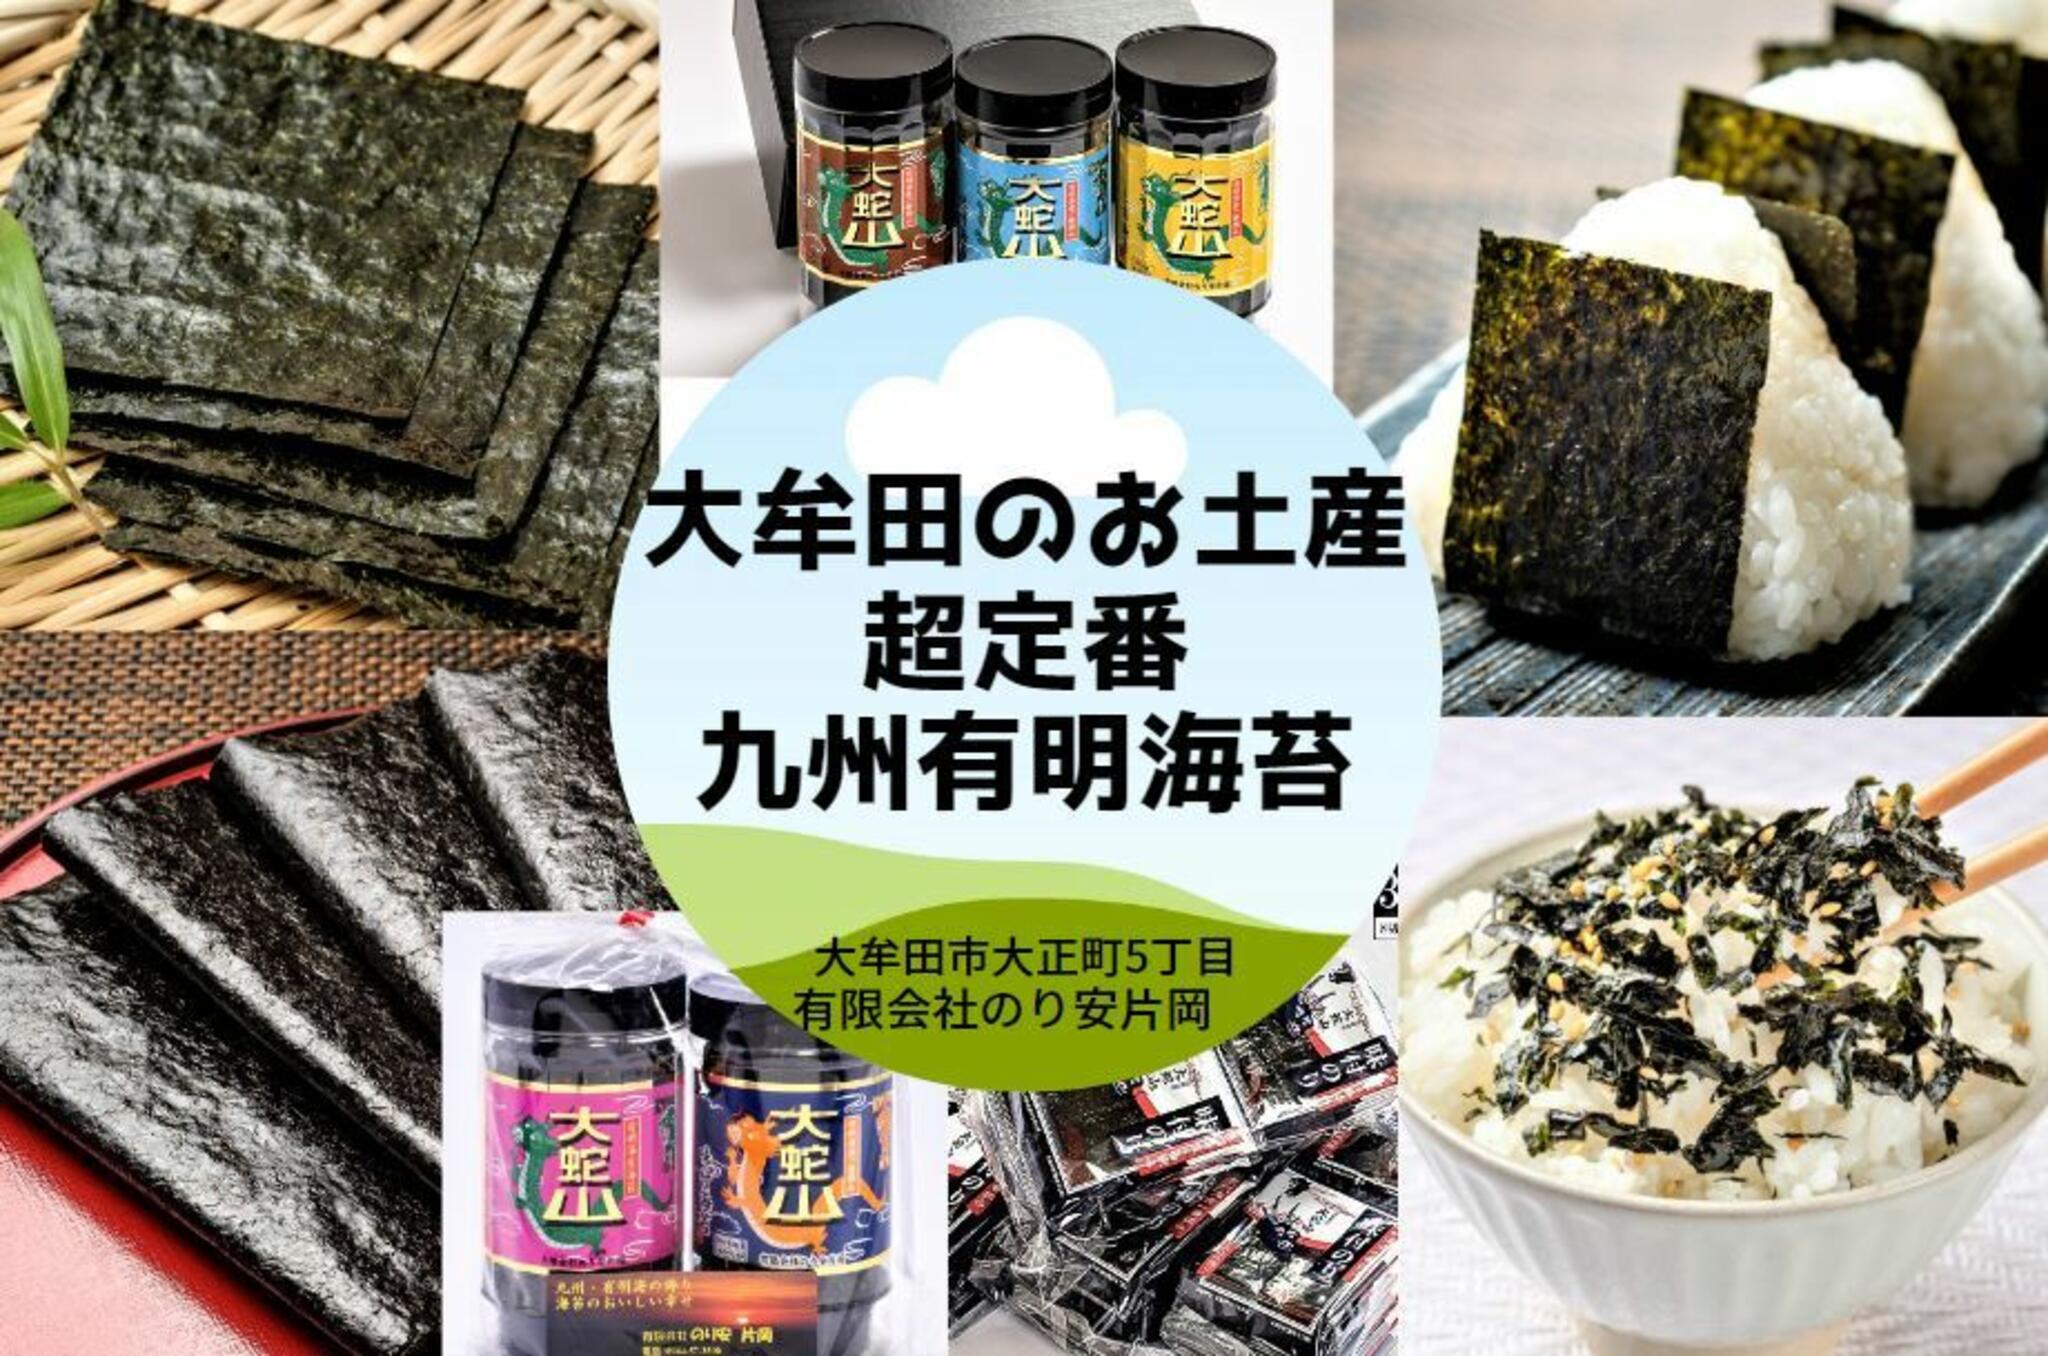 お知らせ : 有限会社のり安片岡 - 大牟田市大正町/食料品店 | Yahoo!マップ